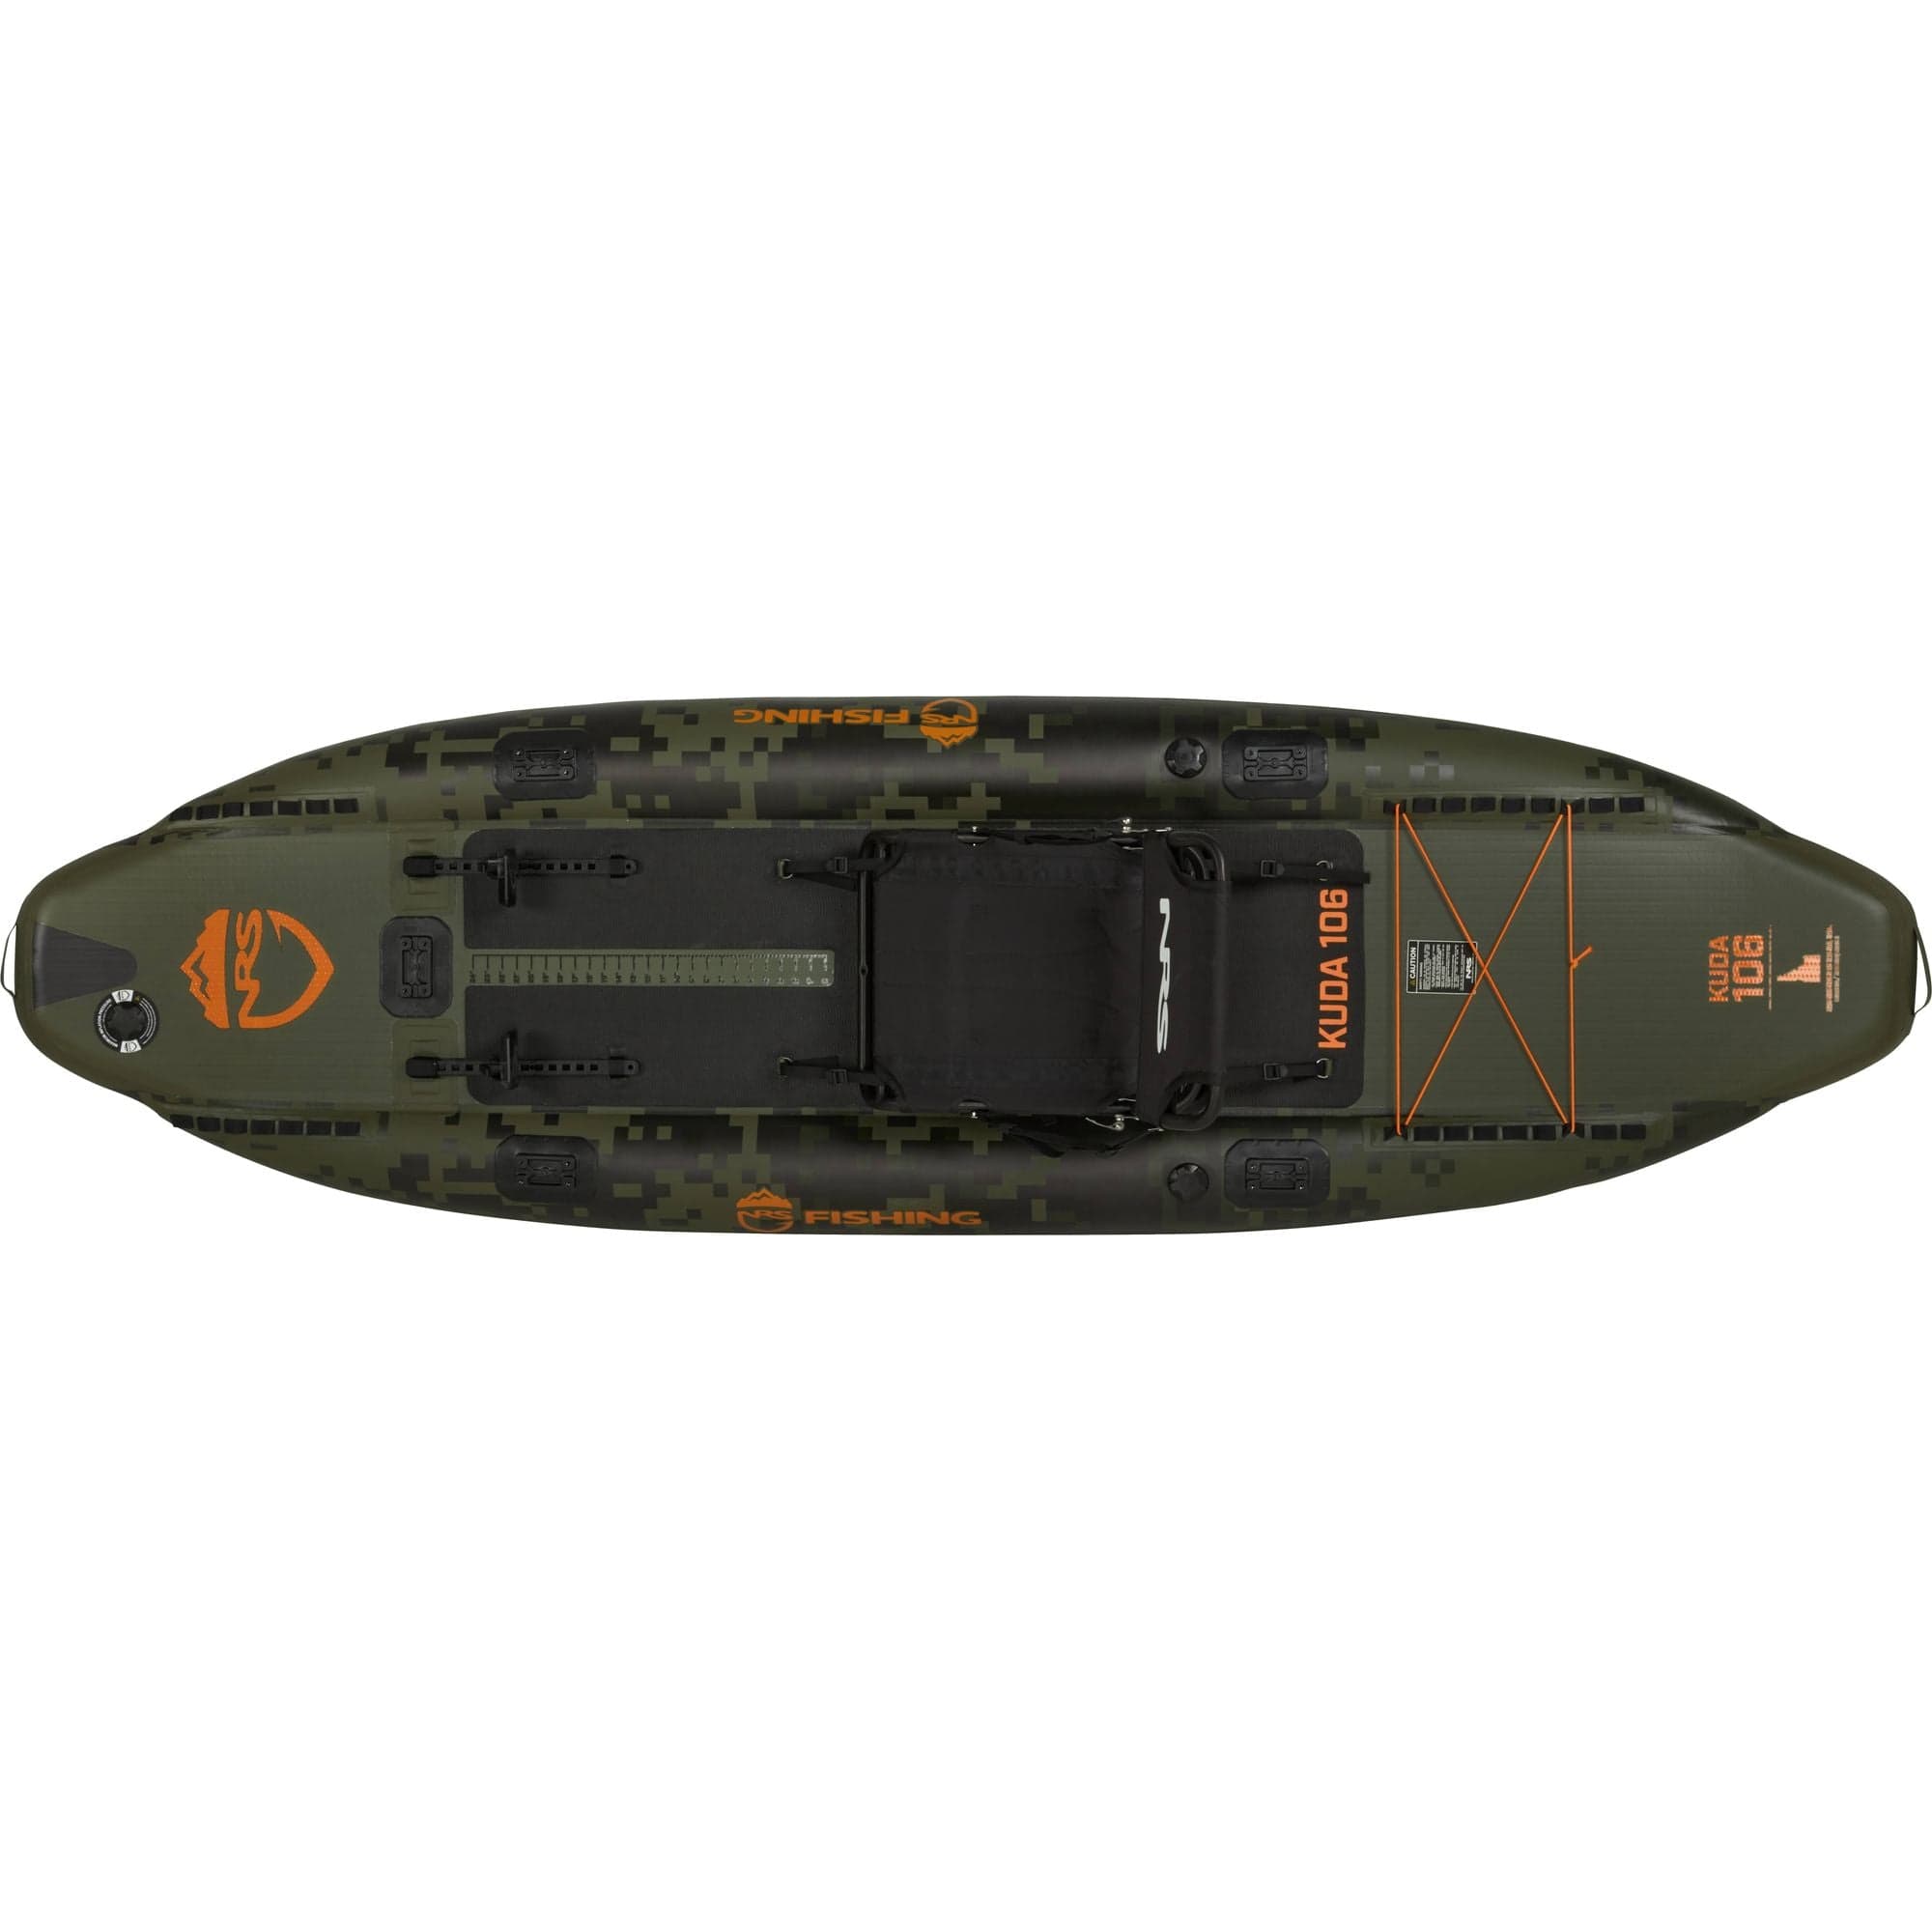 NRS Kuda 106 Inflatable Kayak